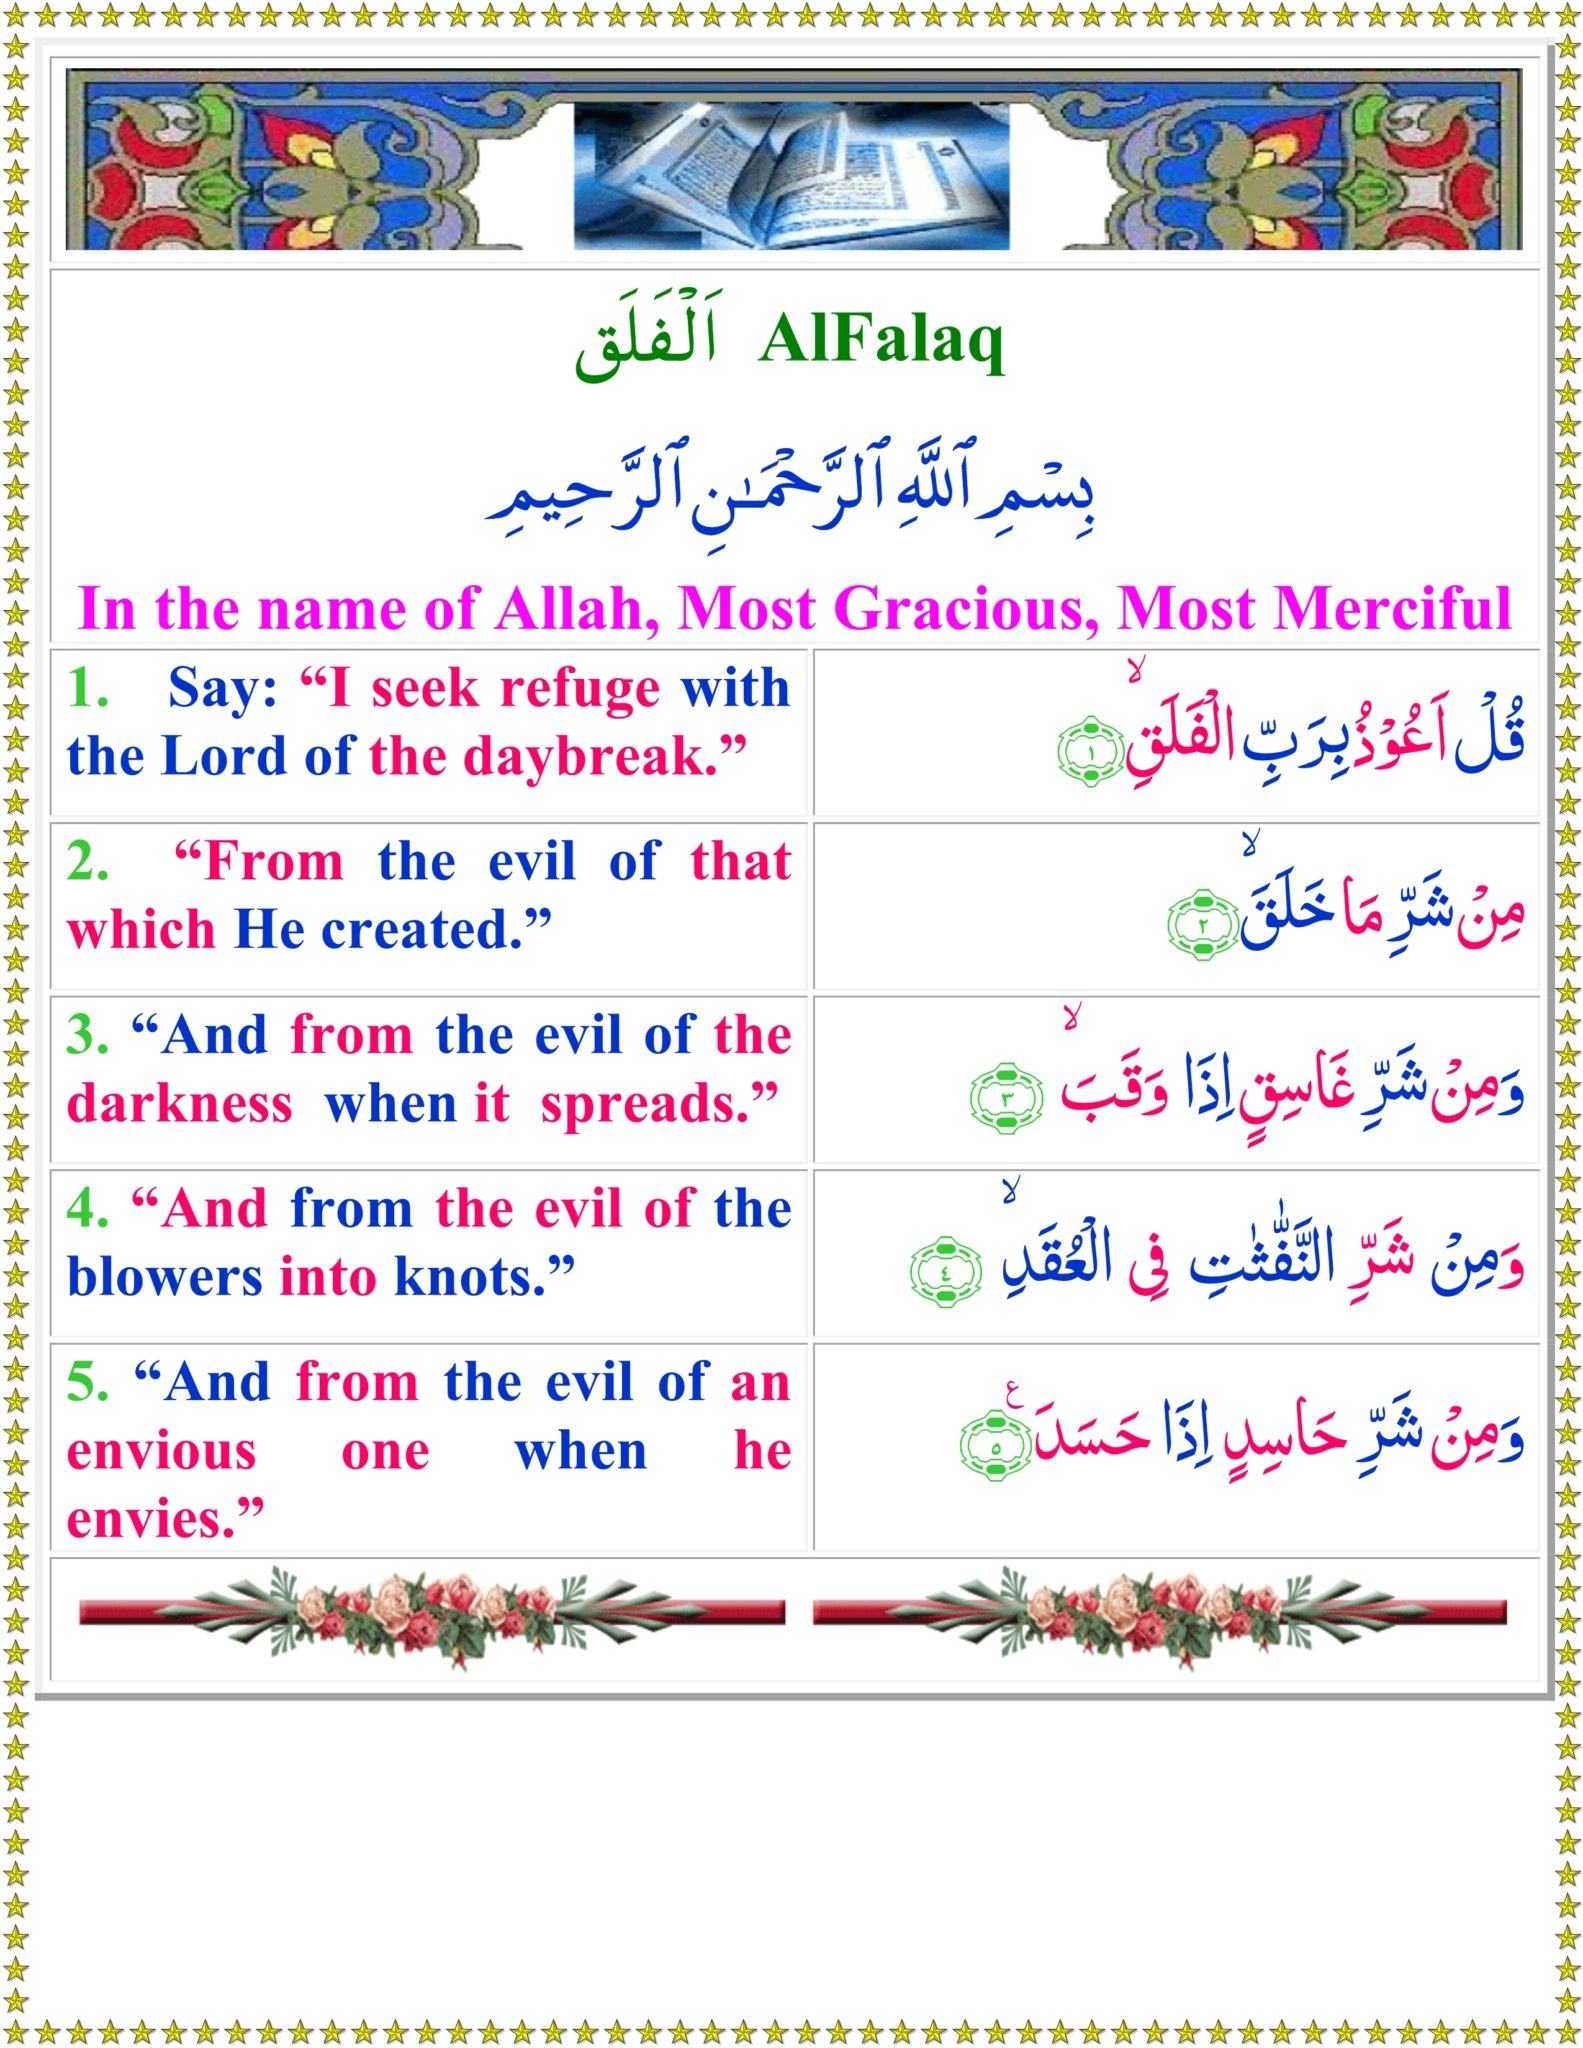 surah Falaq translation in English